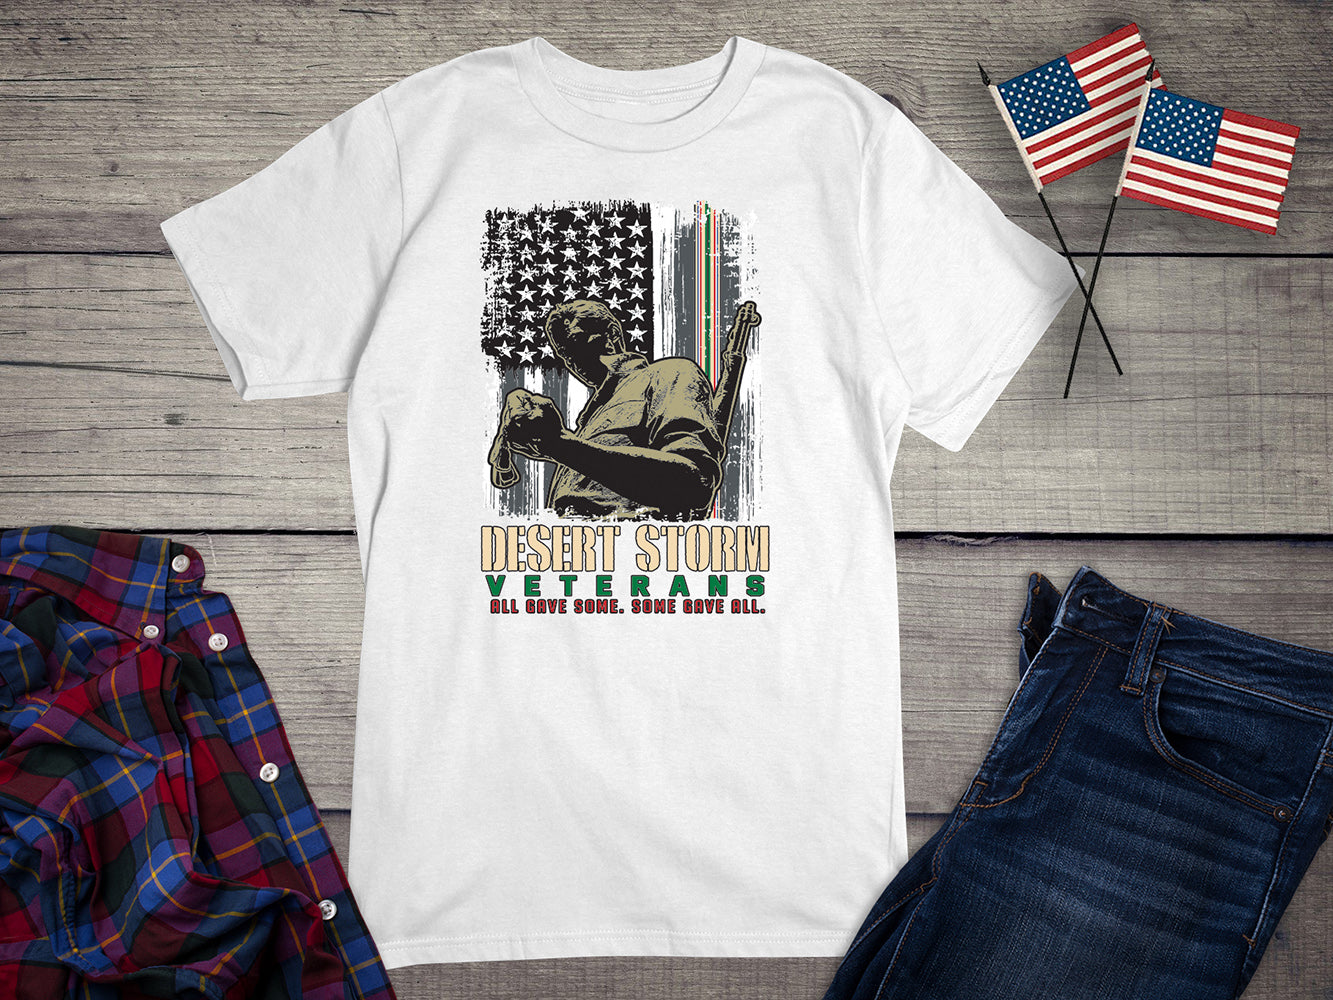 Desert Storm Veterans Flag T-shirt